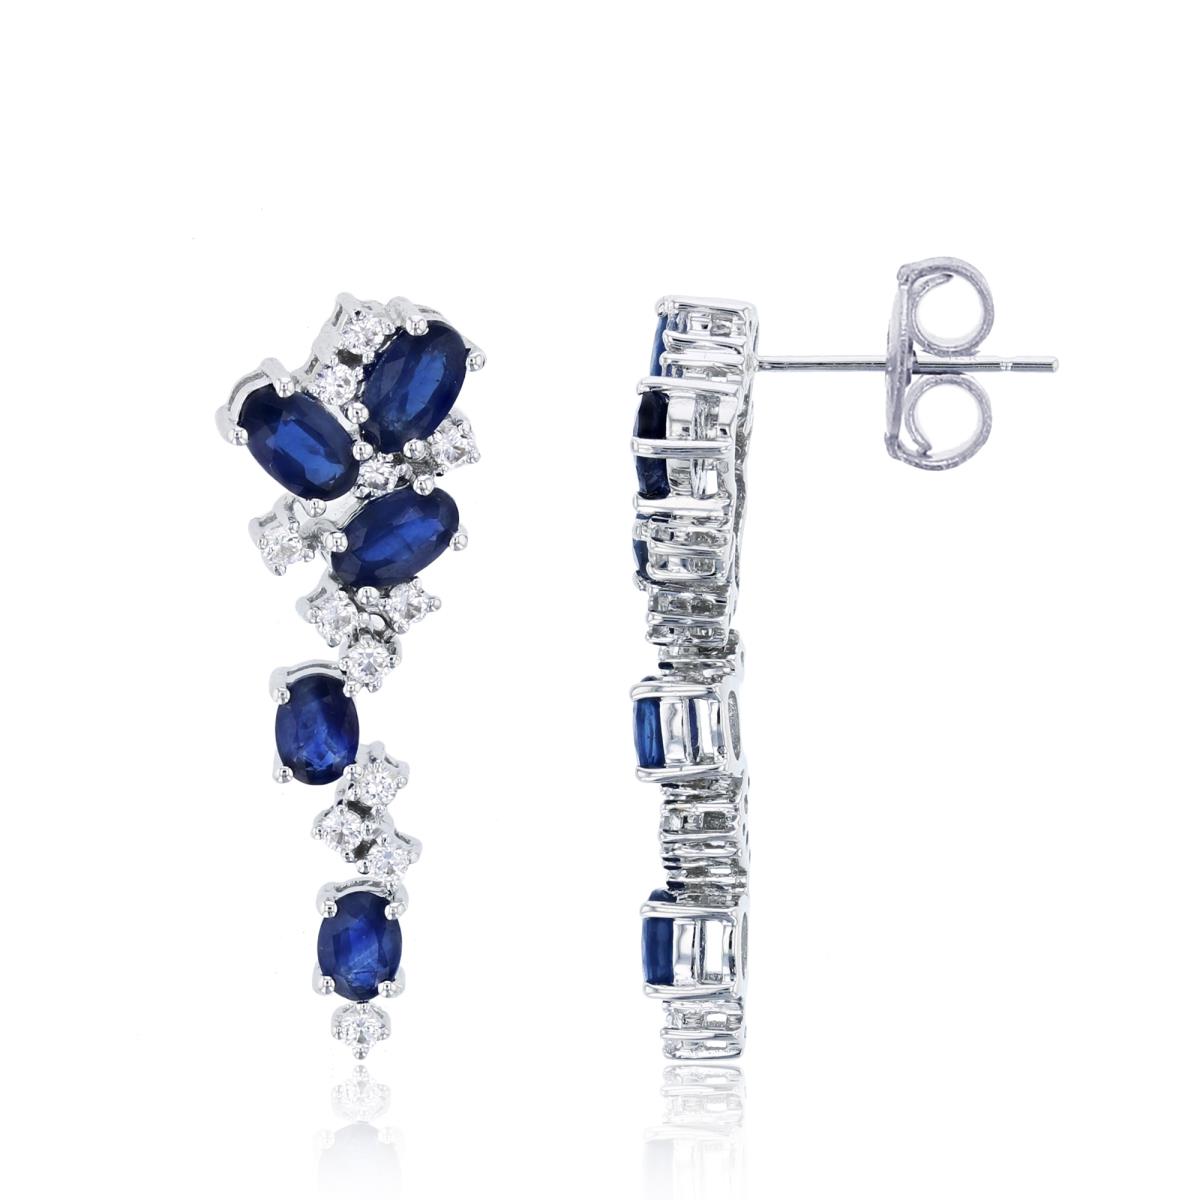 14K White Gold Oval Blue Sapphire & Rnd White Sapphire Flexi Vertical Scattered Earrings